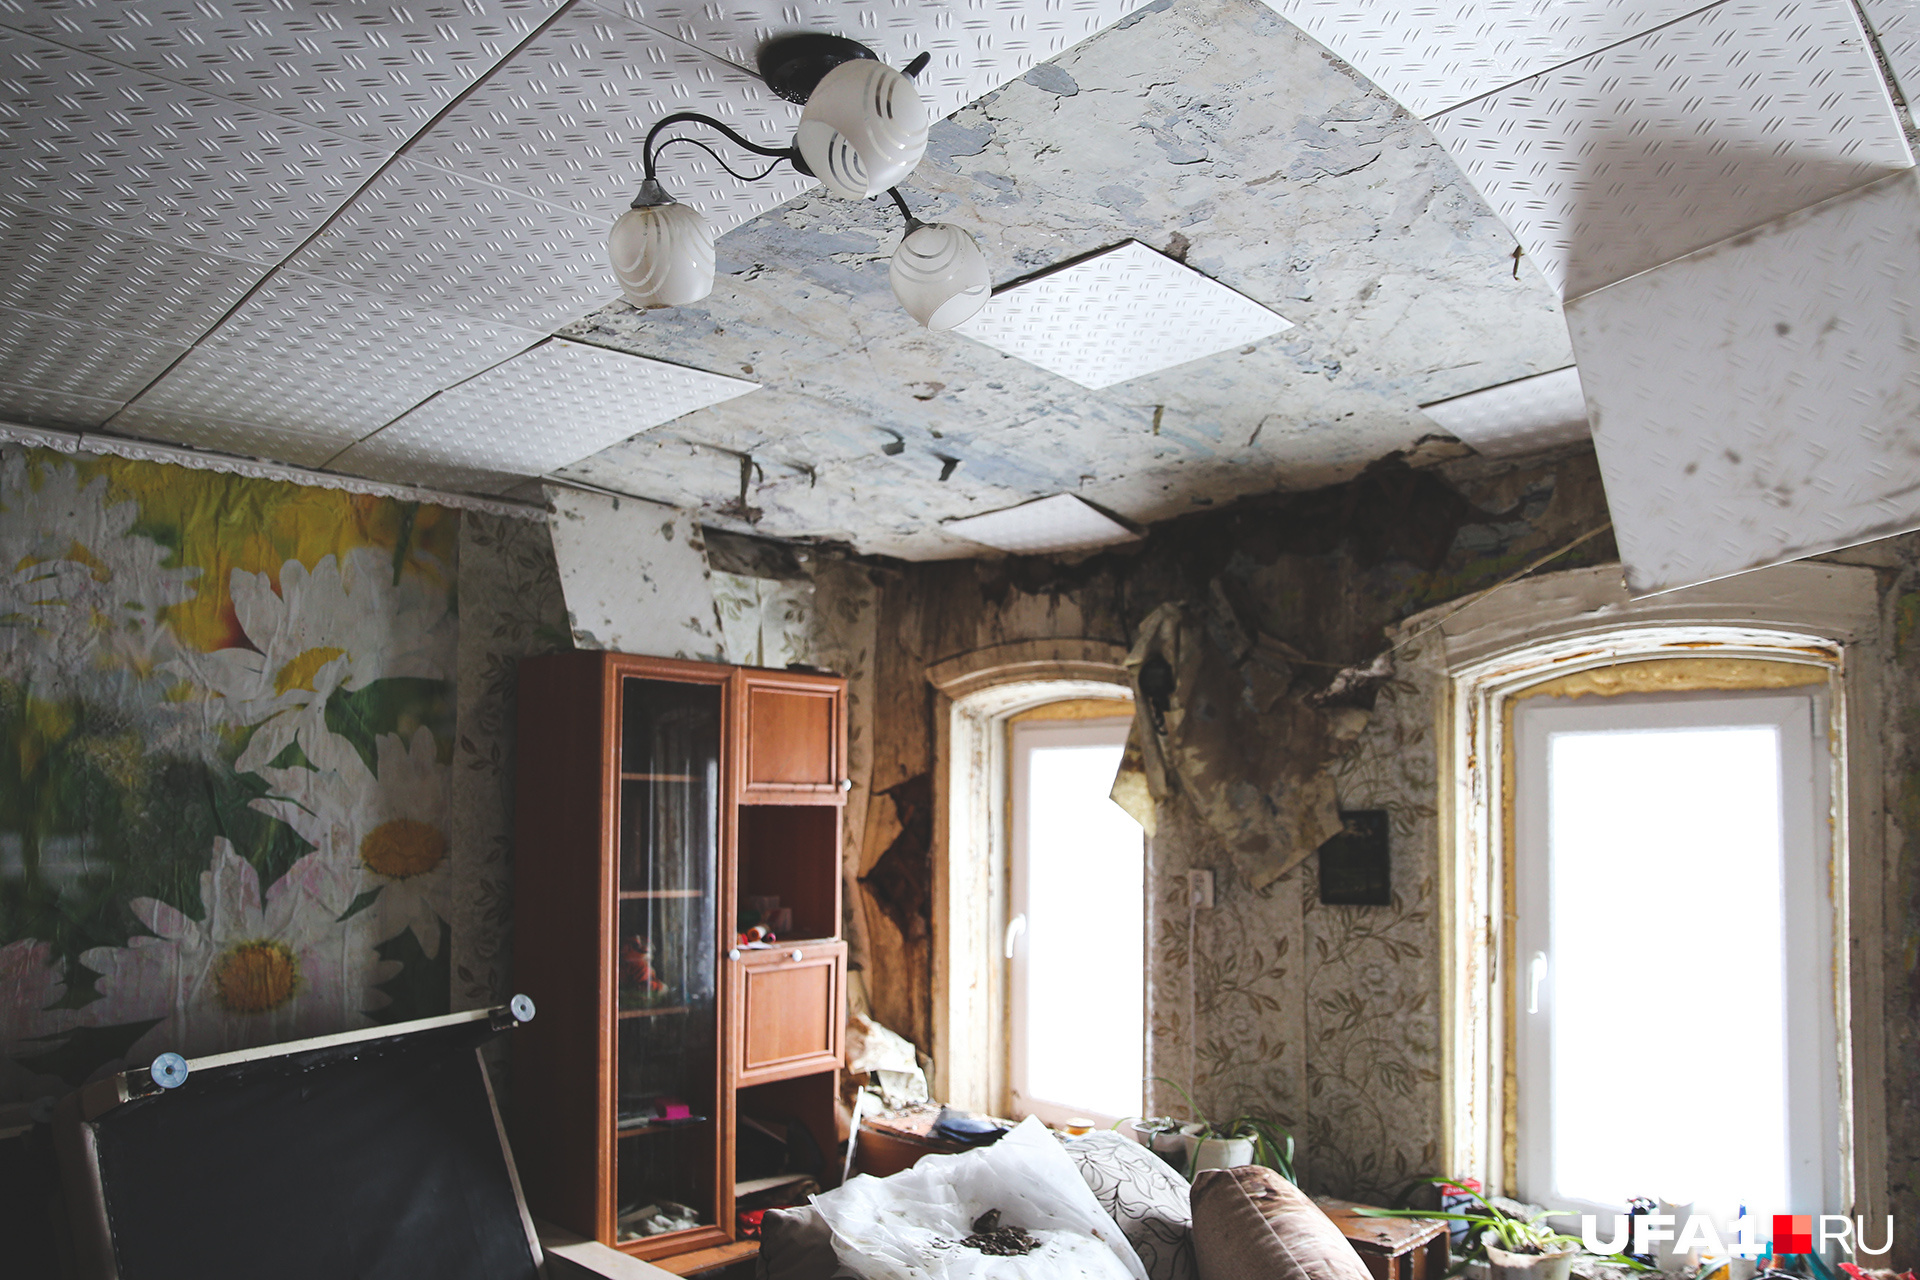 Жить в квартире невозможно, поскольку дом вот-вот может рухнуть